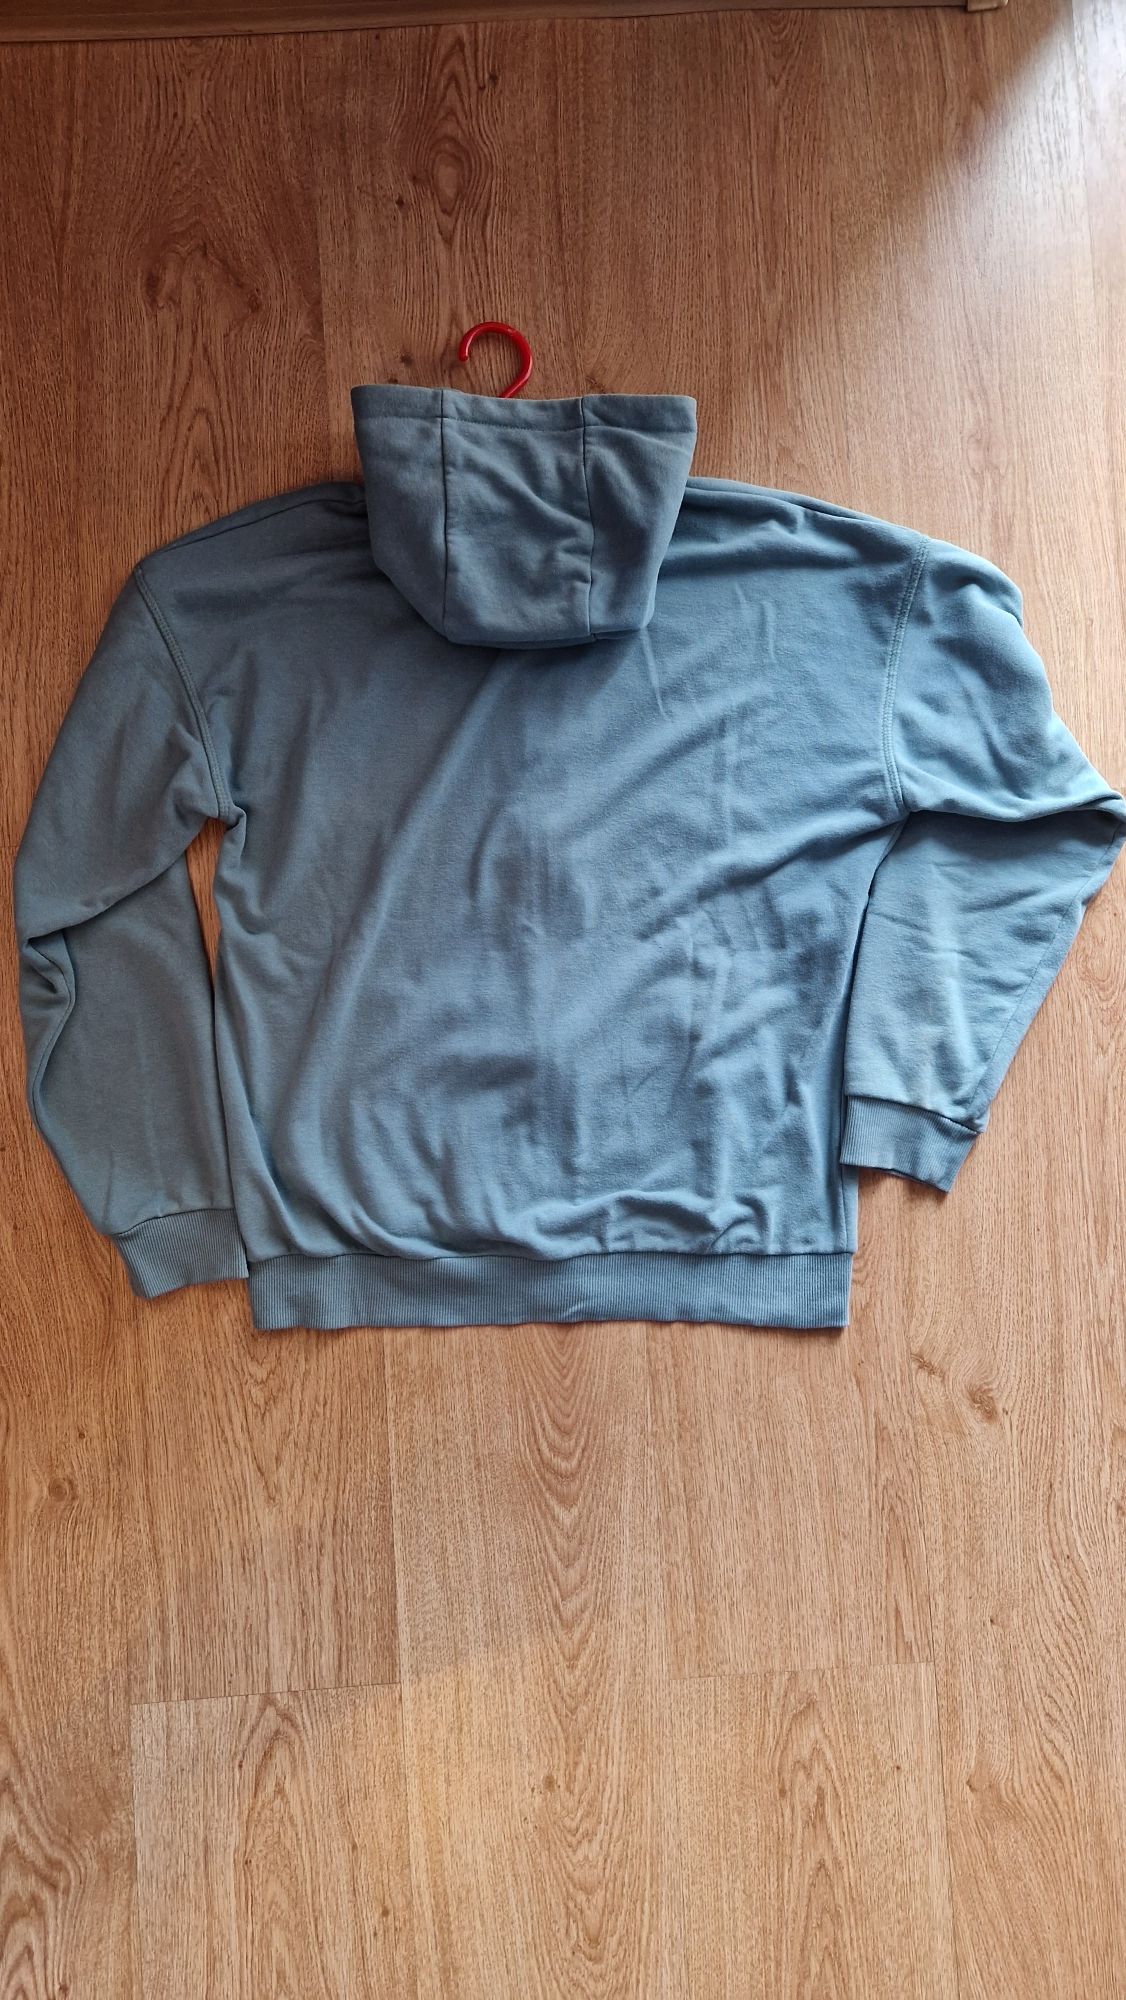 Bluza chłopięca z kapturem rozmiar 164 firmy Reserved